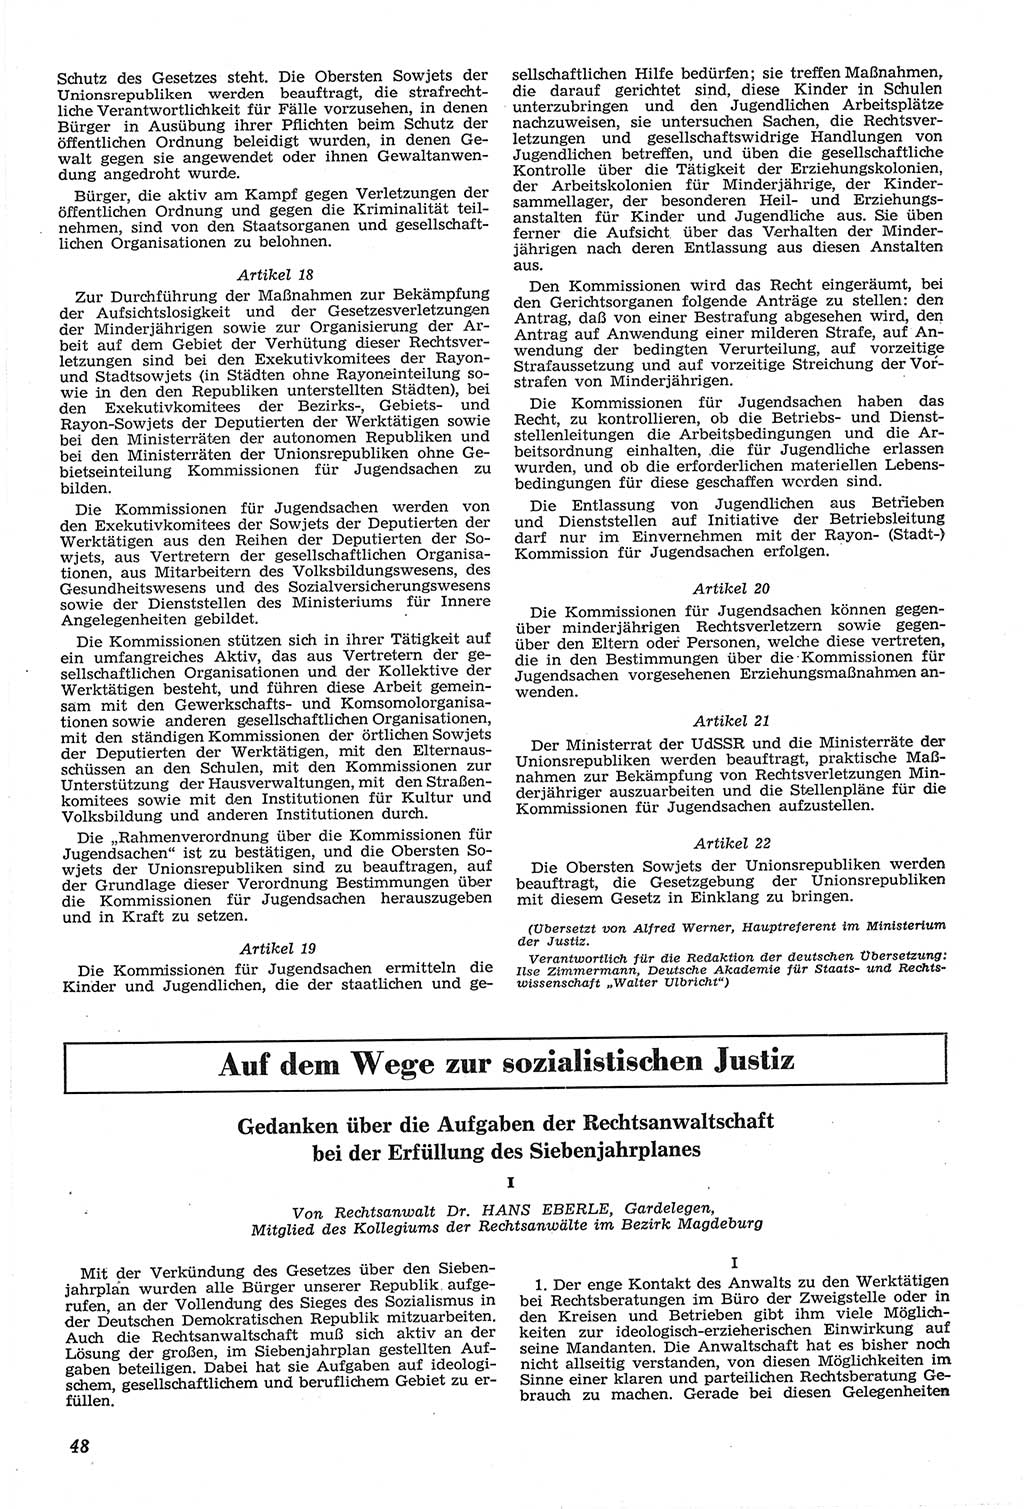 Neue Justiz (NJ), Zeitschrift für Recht und Rechtswissenschaft [Deutsche Demokratische Republik (DDR)], 14. Jahrgang 1960, Seite 48 (NJ DDR 1960, S. 48)